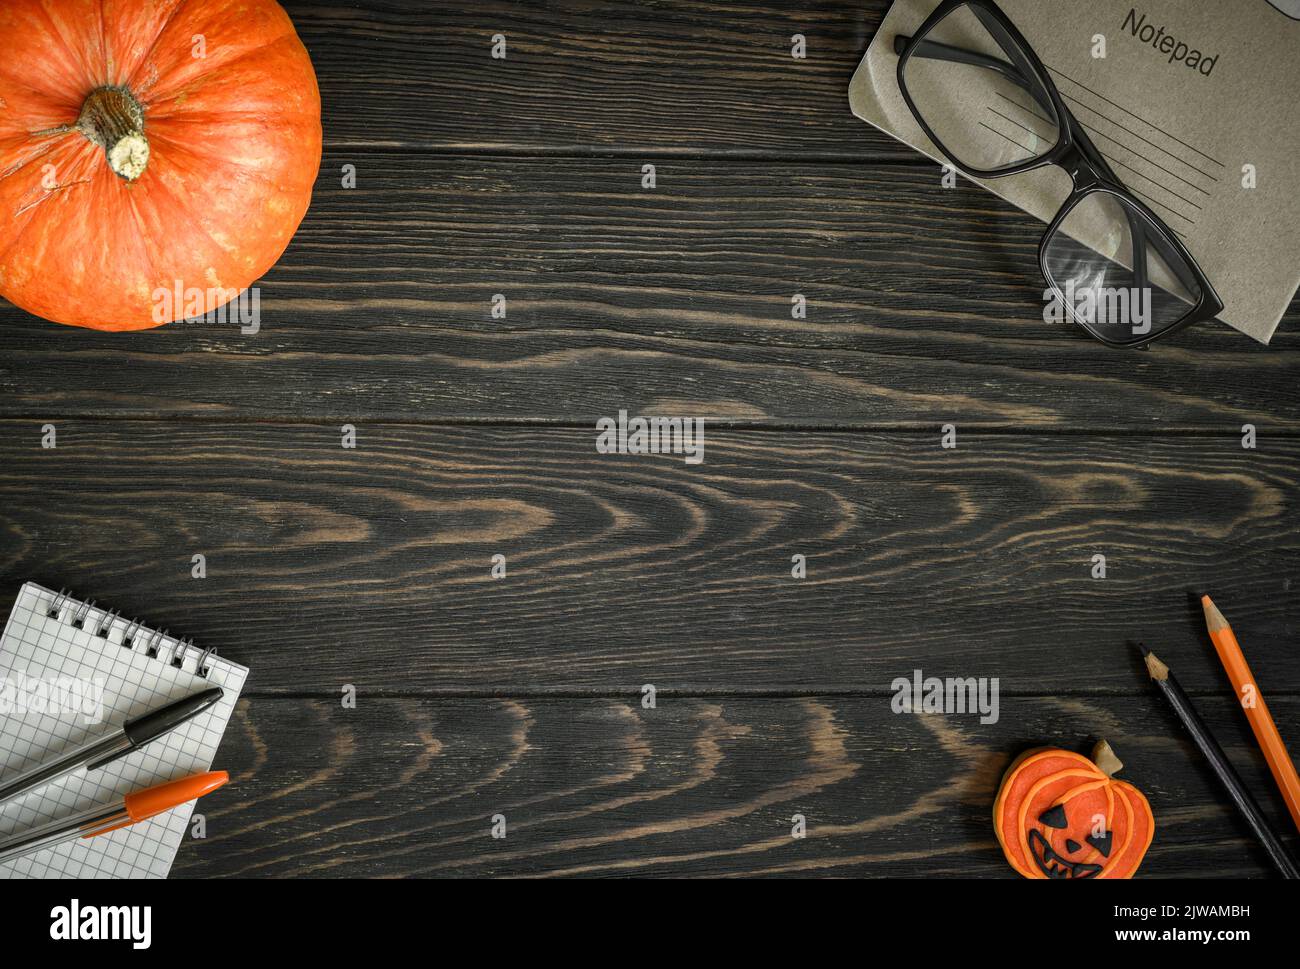 Fondo de Halloween, vista superior. Calabaza y útiles escolares sobre una mesa de madera oscura, puesta plana. Marco de la comida de Halloween naranja, vasos y bloc de notas en woo Foto de stock